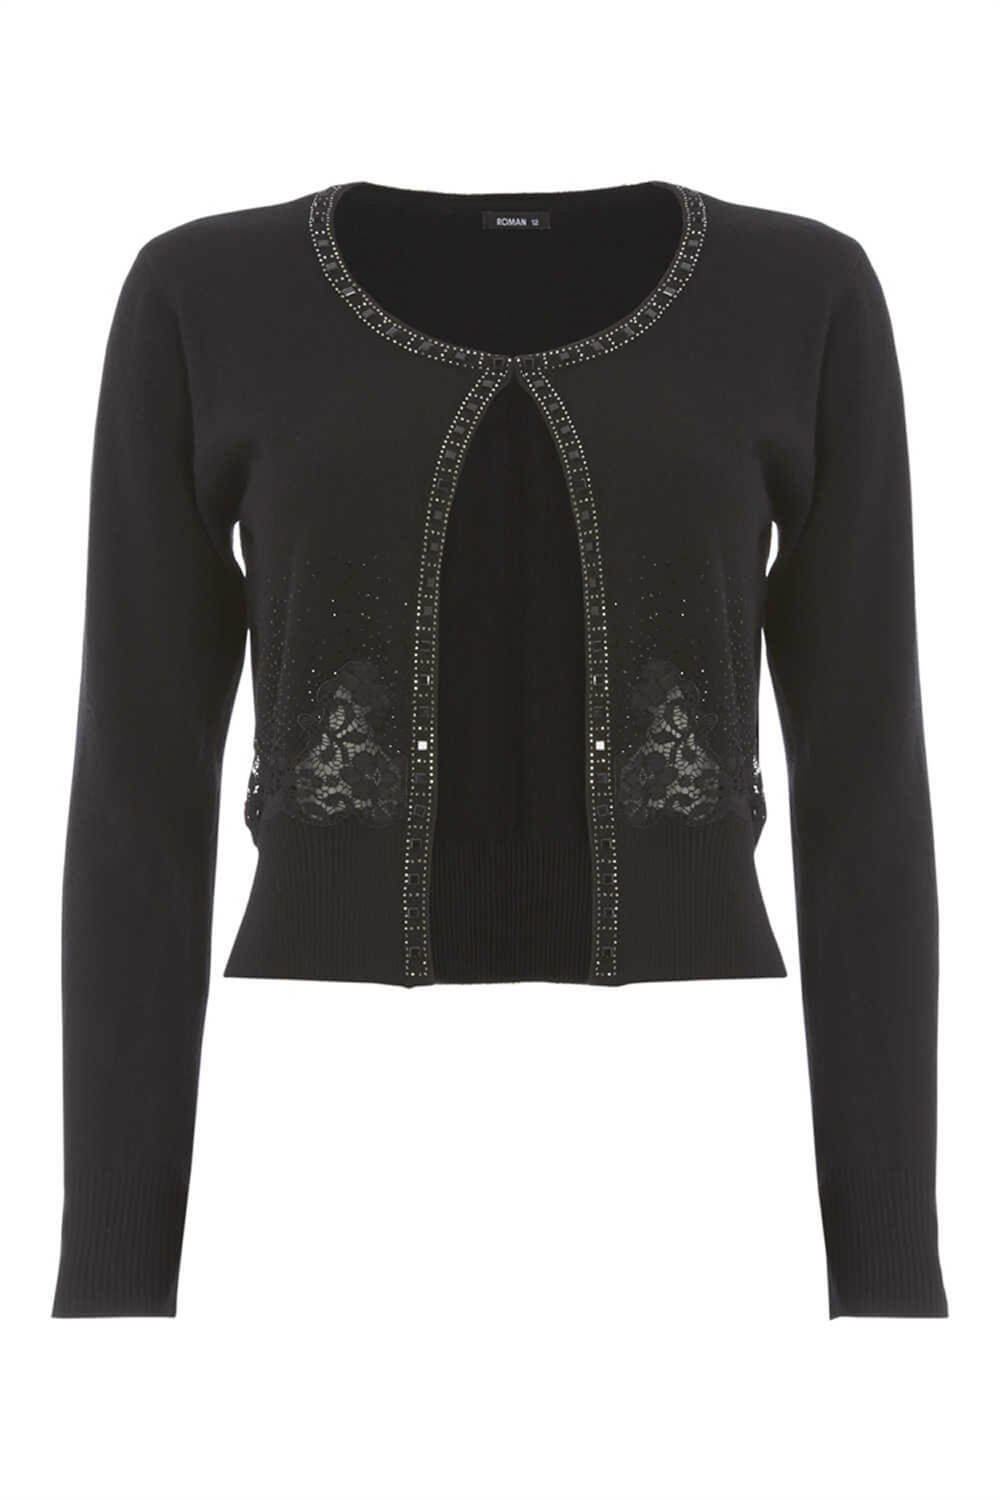 Black Lace Embellished Cardigan, Image 4 of 4